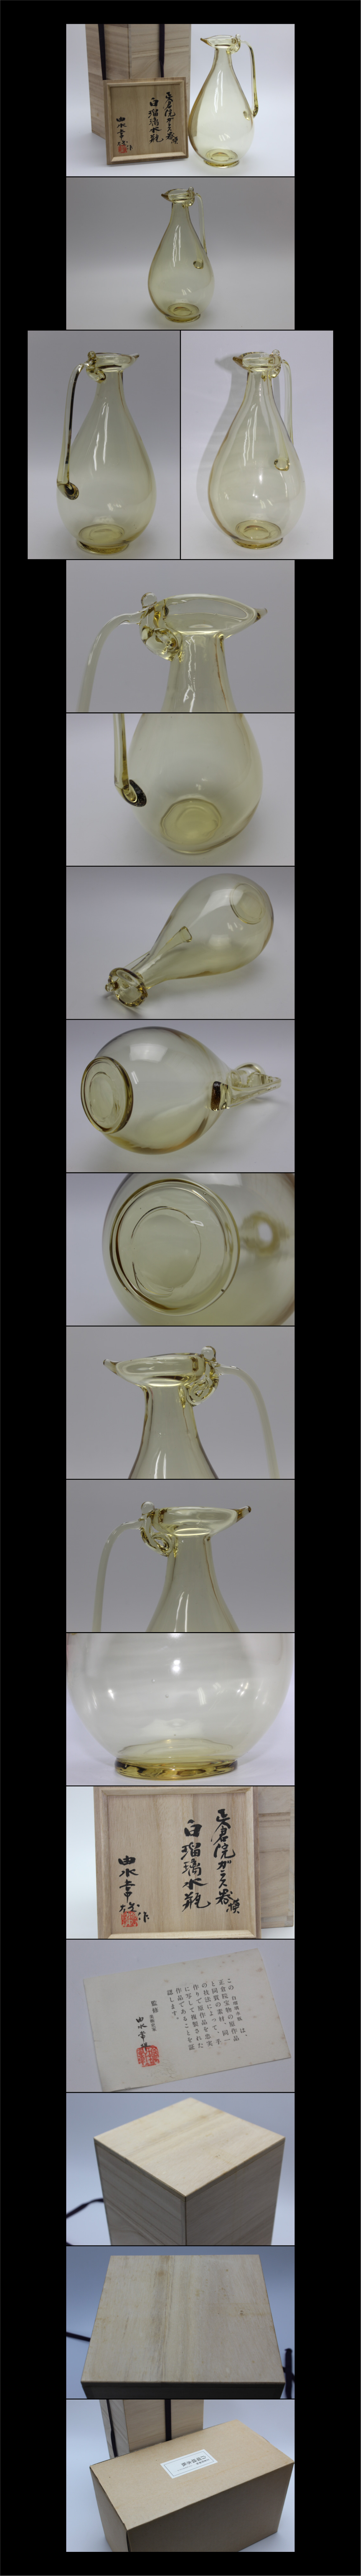 【商品】■正倉院御物/正倉院ガラス器模 白瑠璃水瓶 由水常雄作■送料込み 工芸ガラス